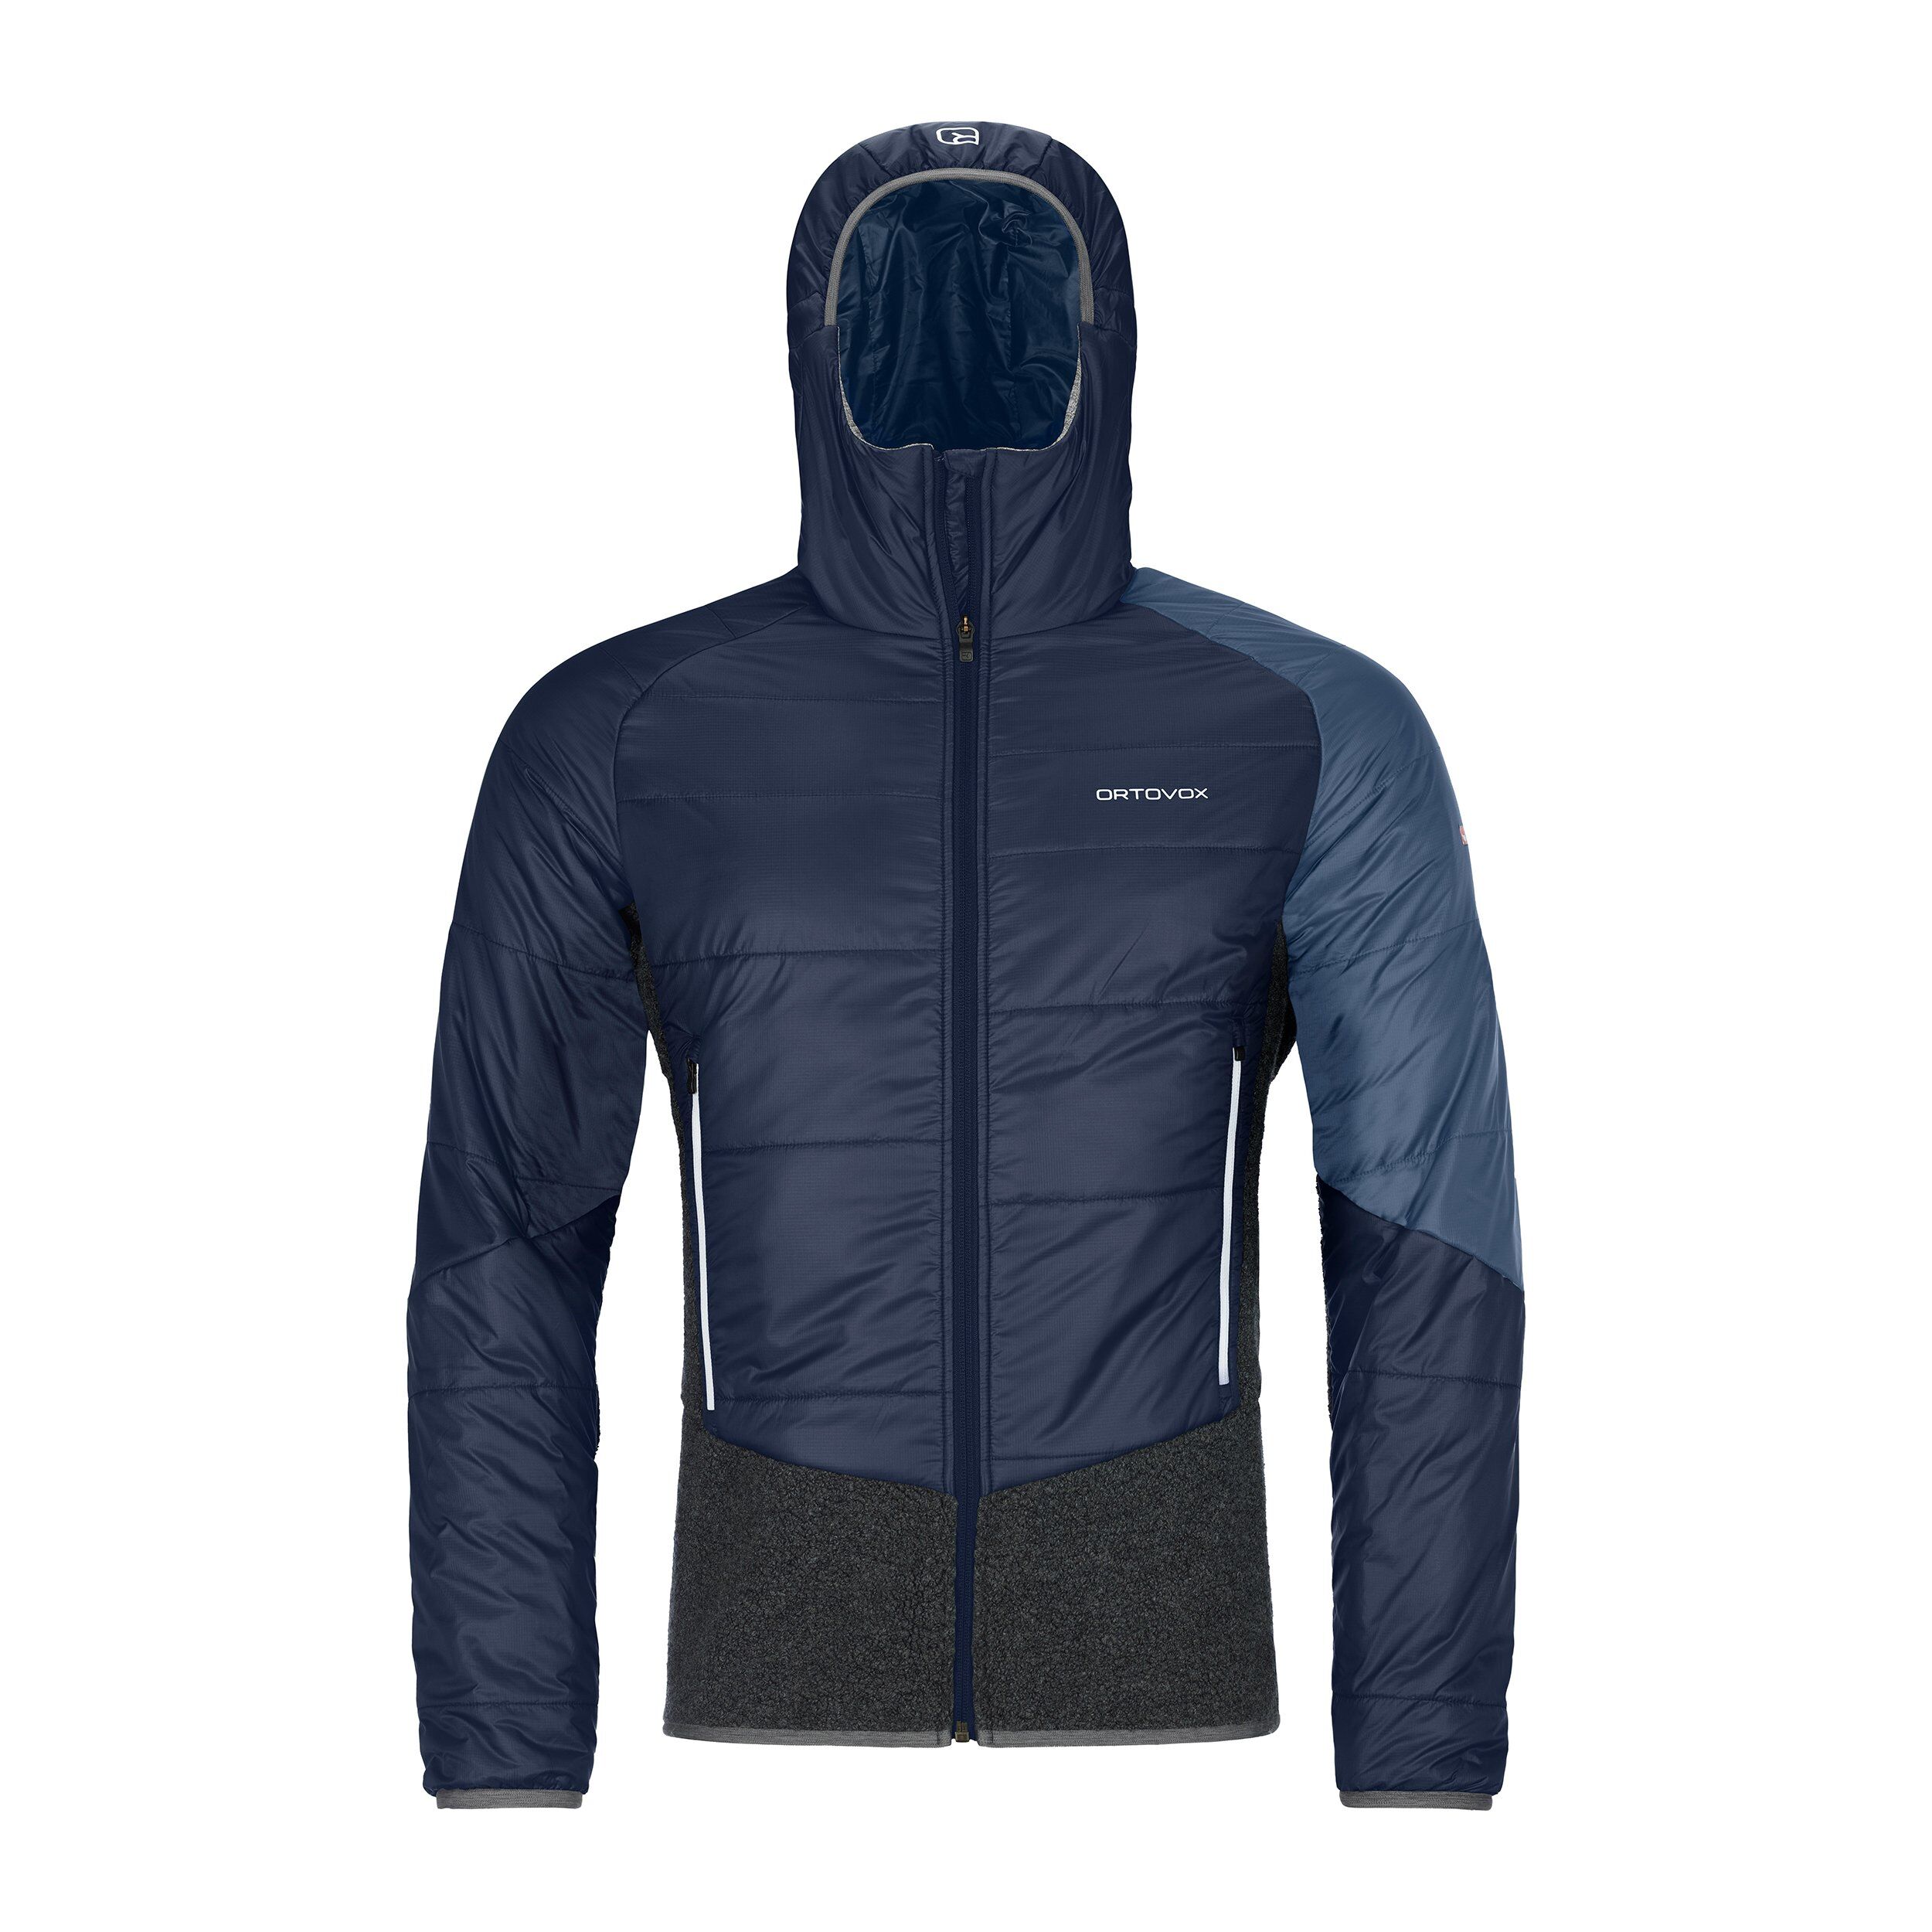 Ortovox Swisswool Piz Zupo Jacket - Synthetic jacket - Men's